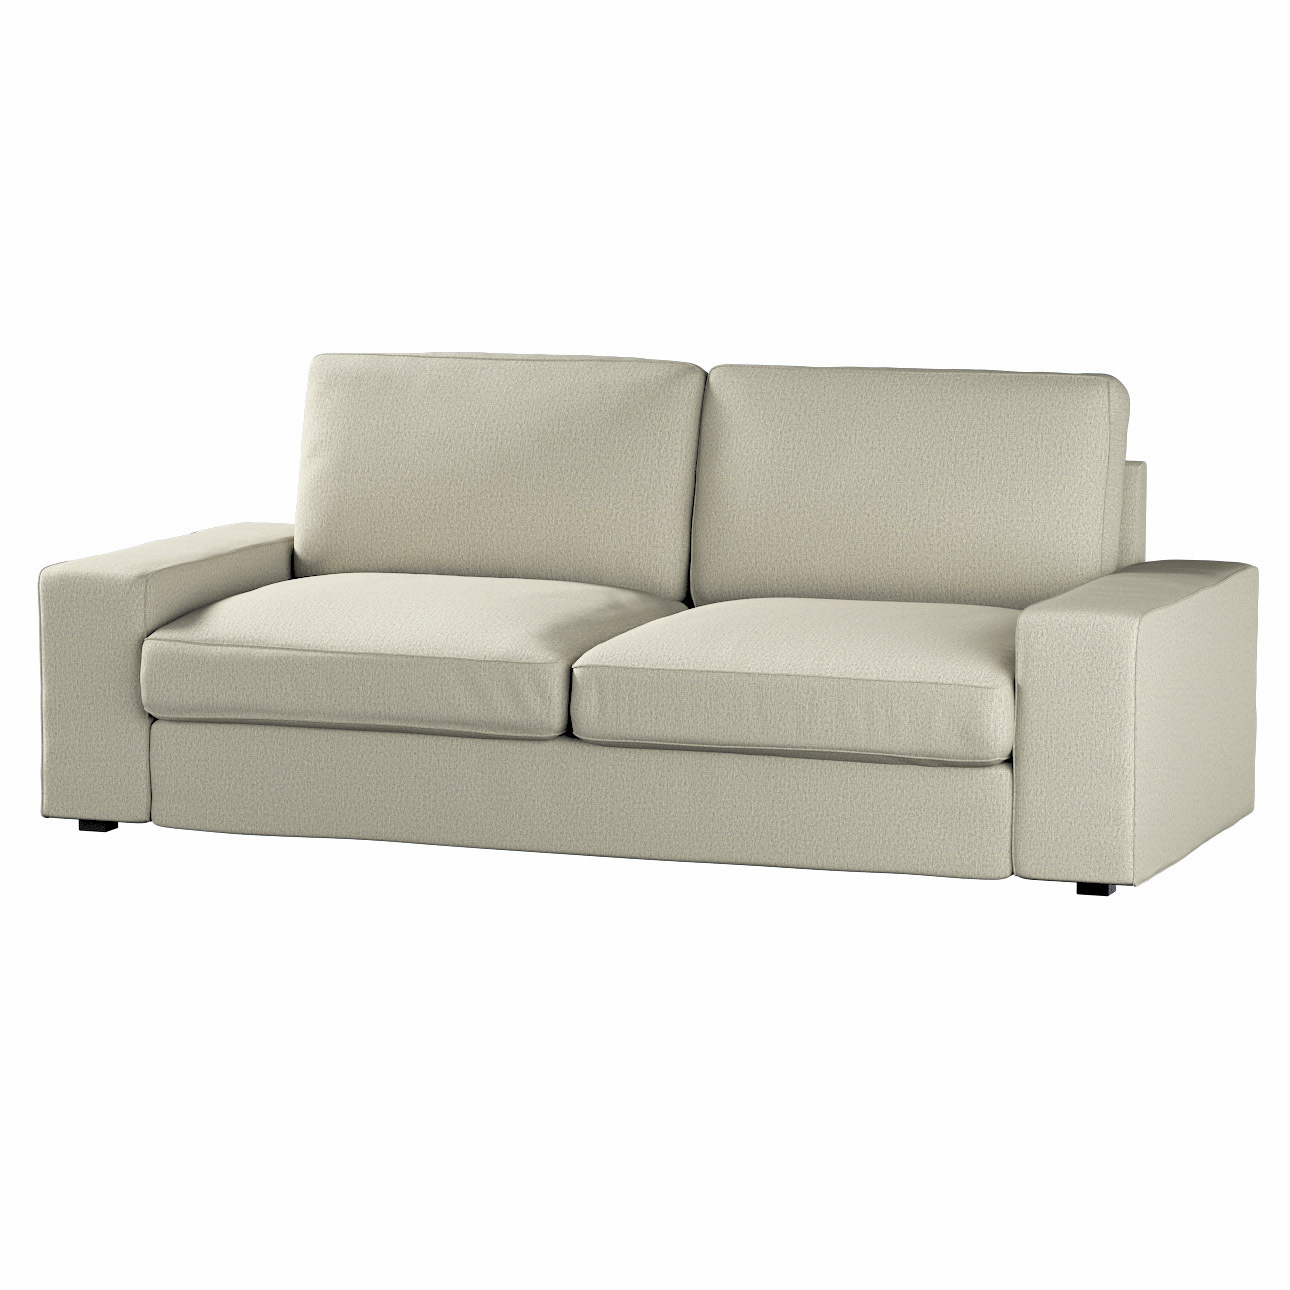 Bezug für Kivik 3-Sitzer Sofa, beige, Bezug für Sofa Kivik 3-Sitzer, Madrid günstig online kaufen